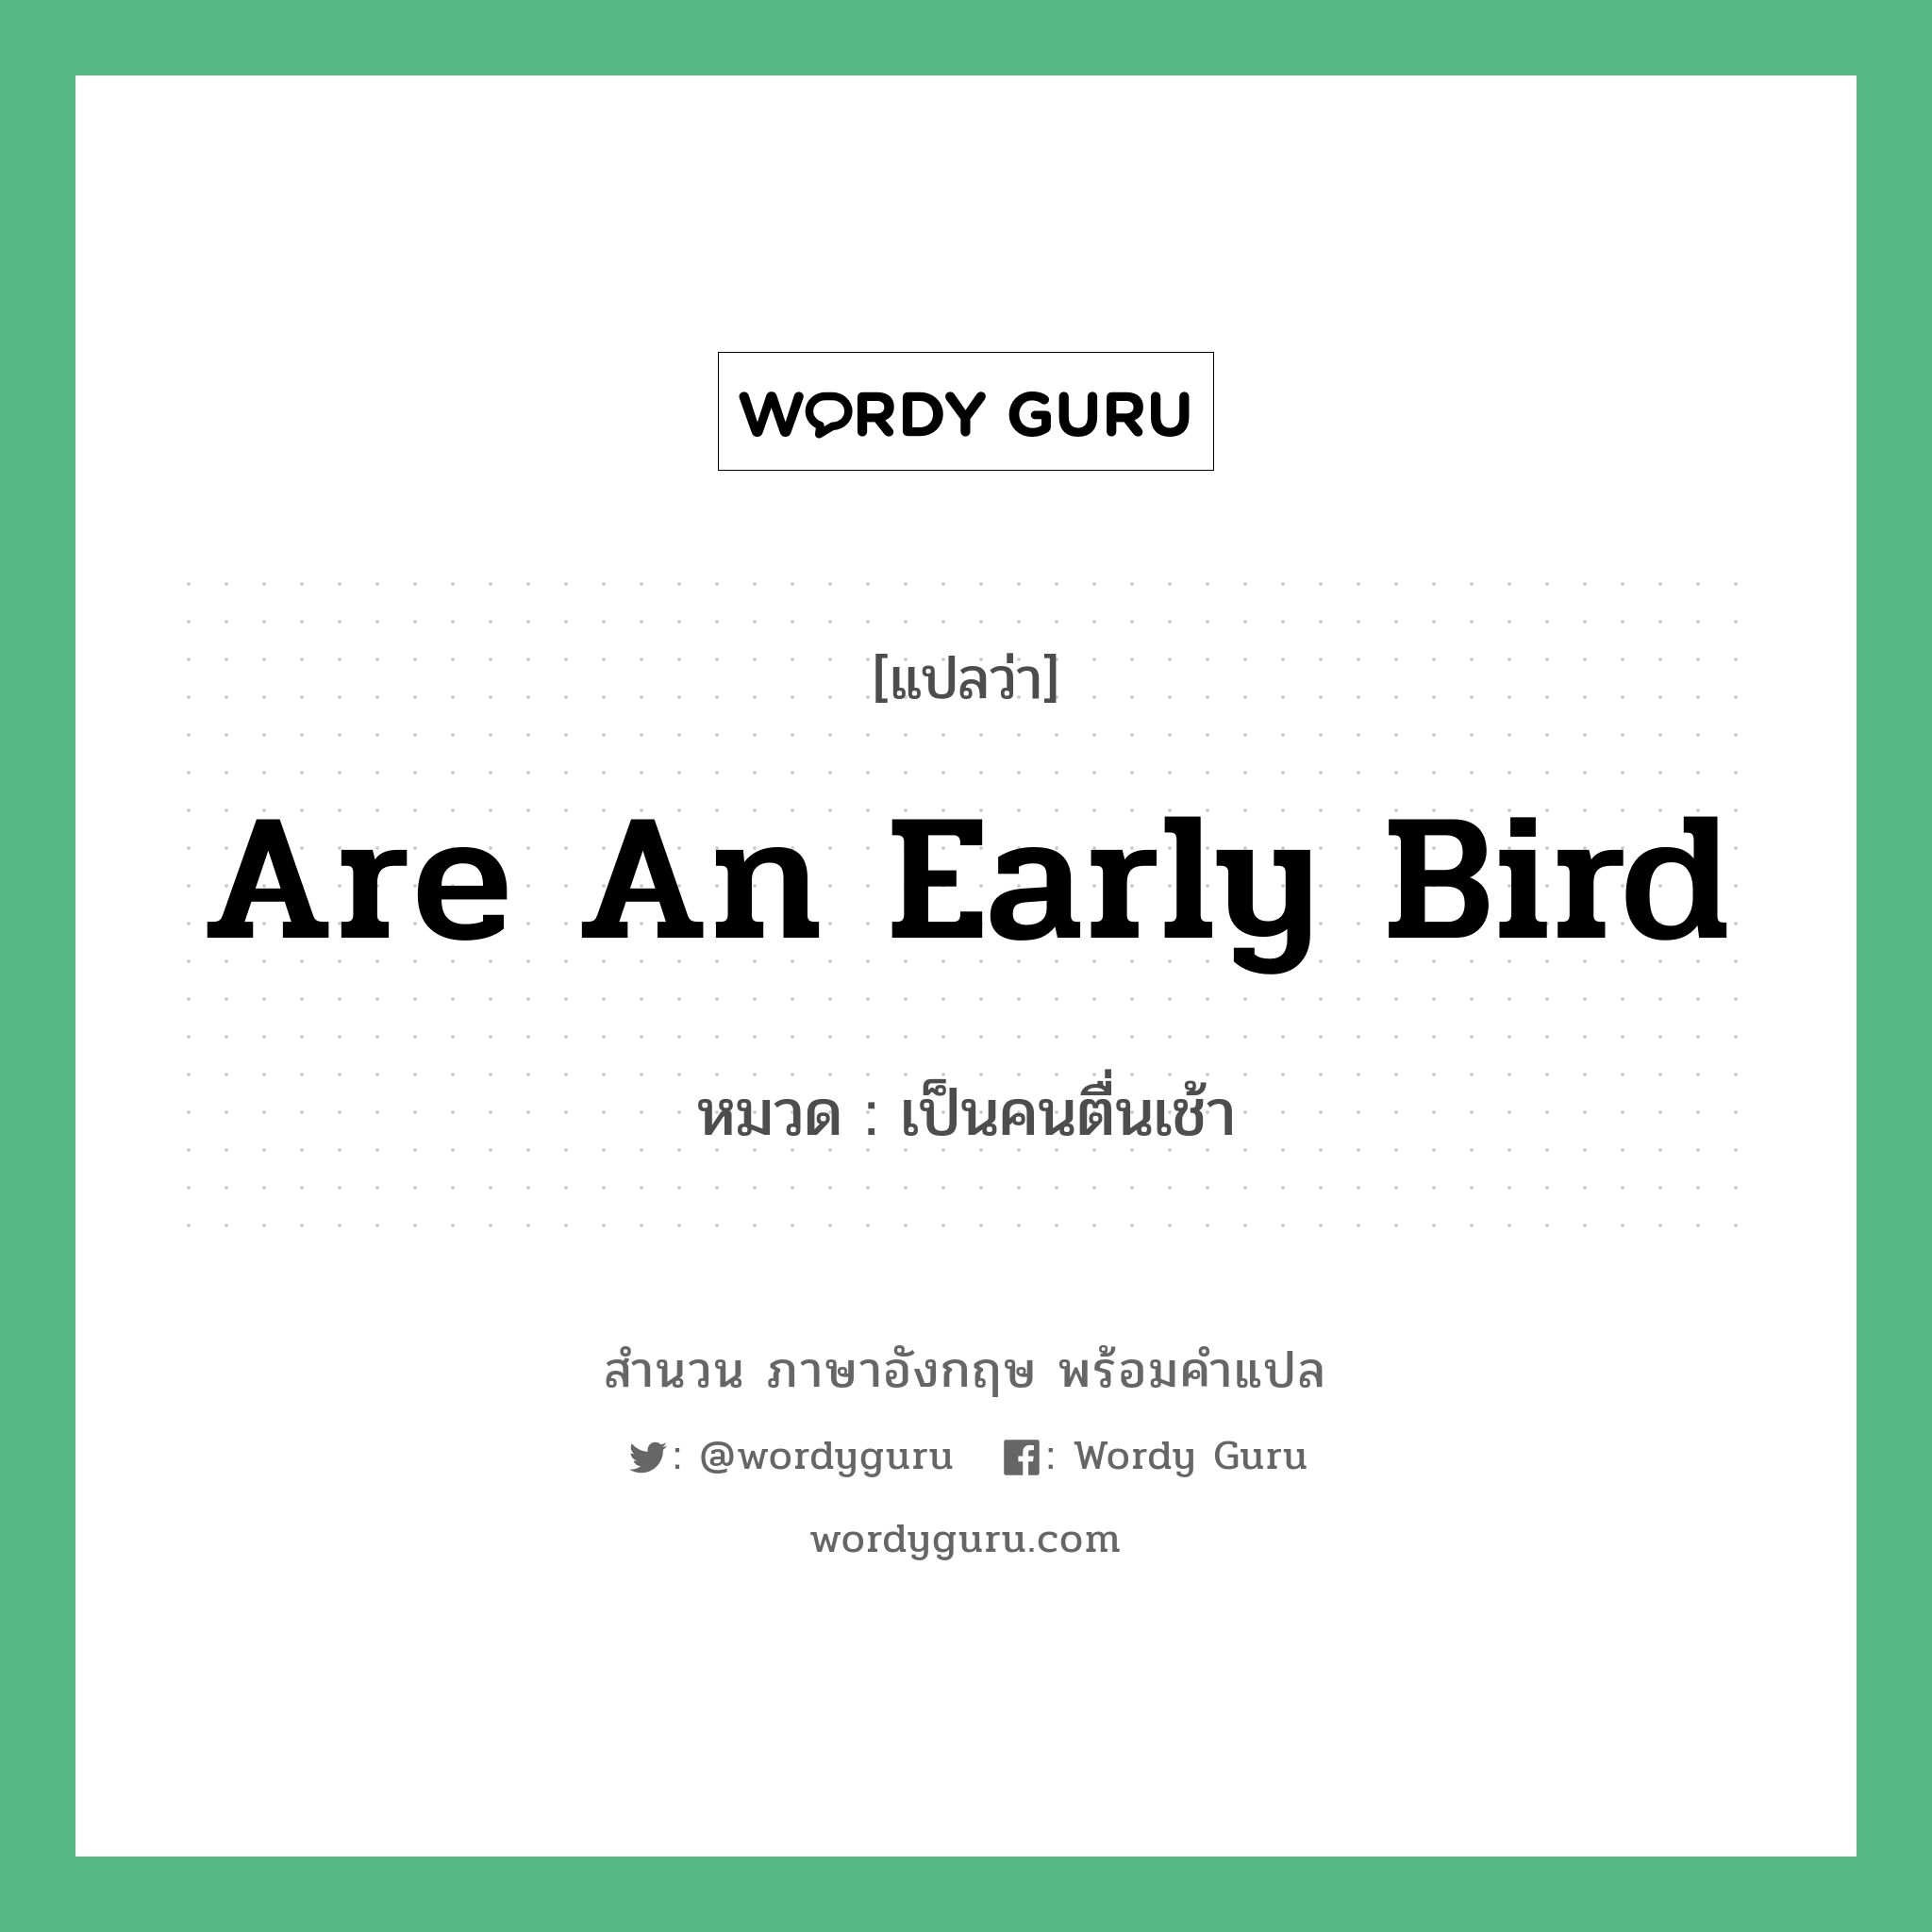 are an early bird แปลว่า?, สำนวนภาษาอังกฤษ are an early bird หมวด เป็นคนตื่นเช้า